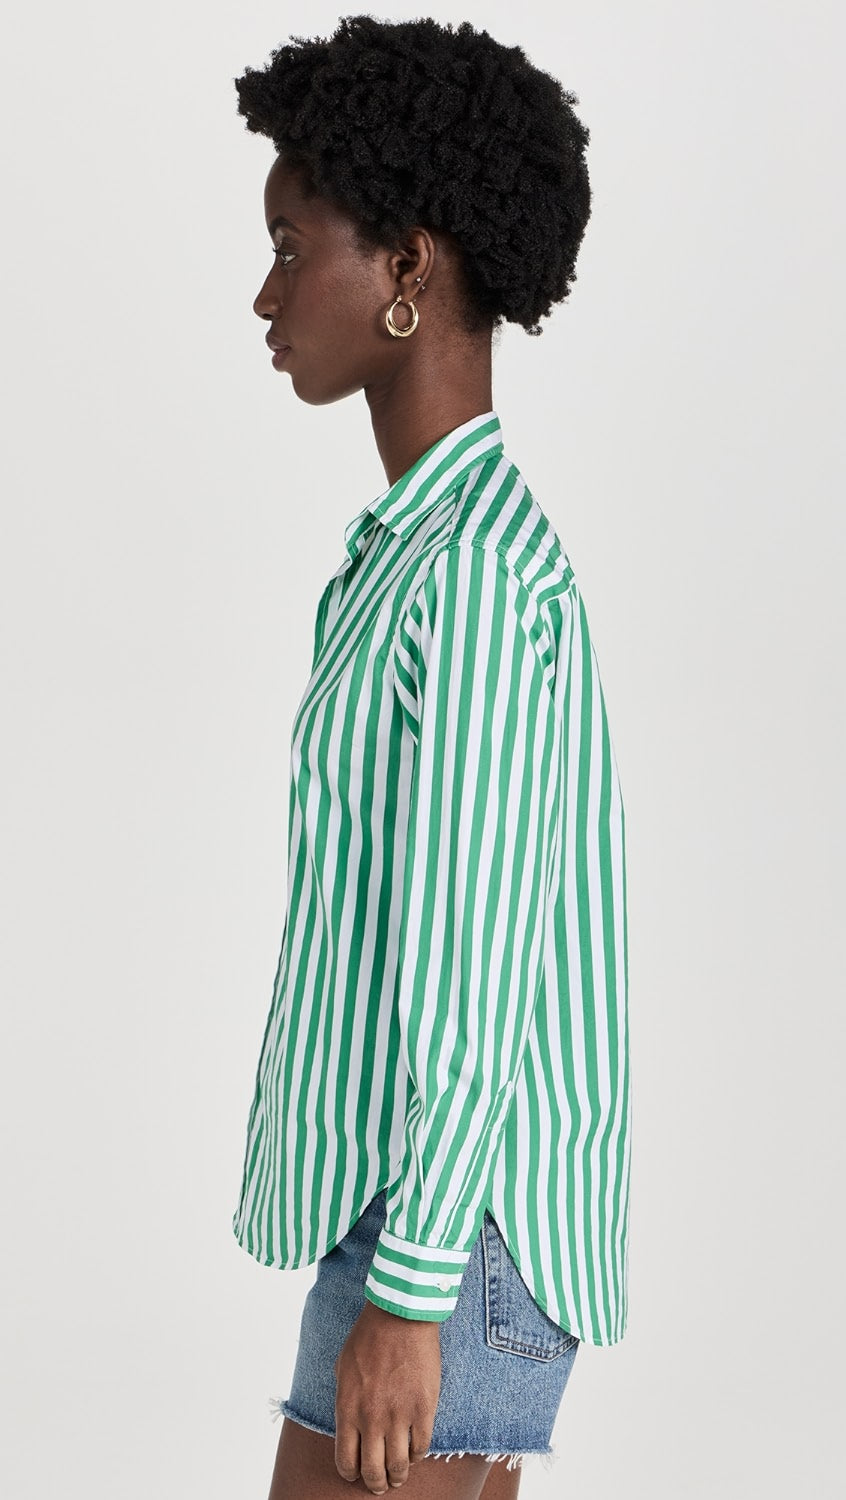 Frank & Eileen Frank Classic Button-Up Shirt - Wide Green Stripe